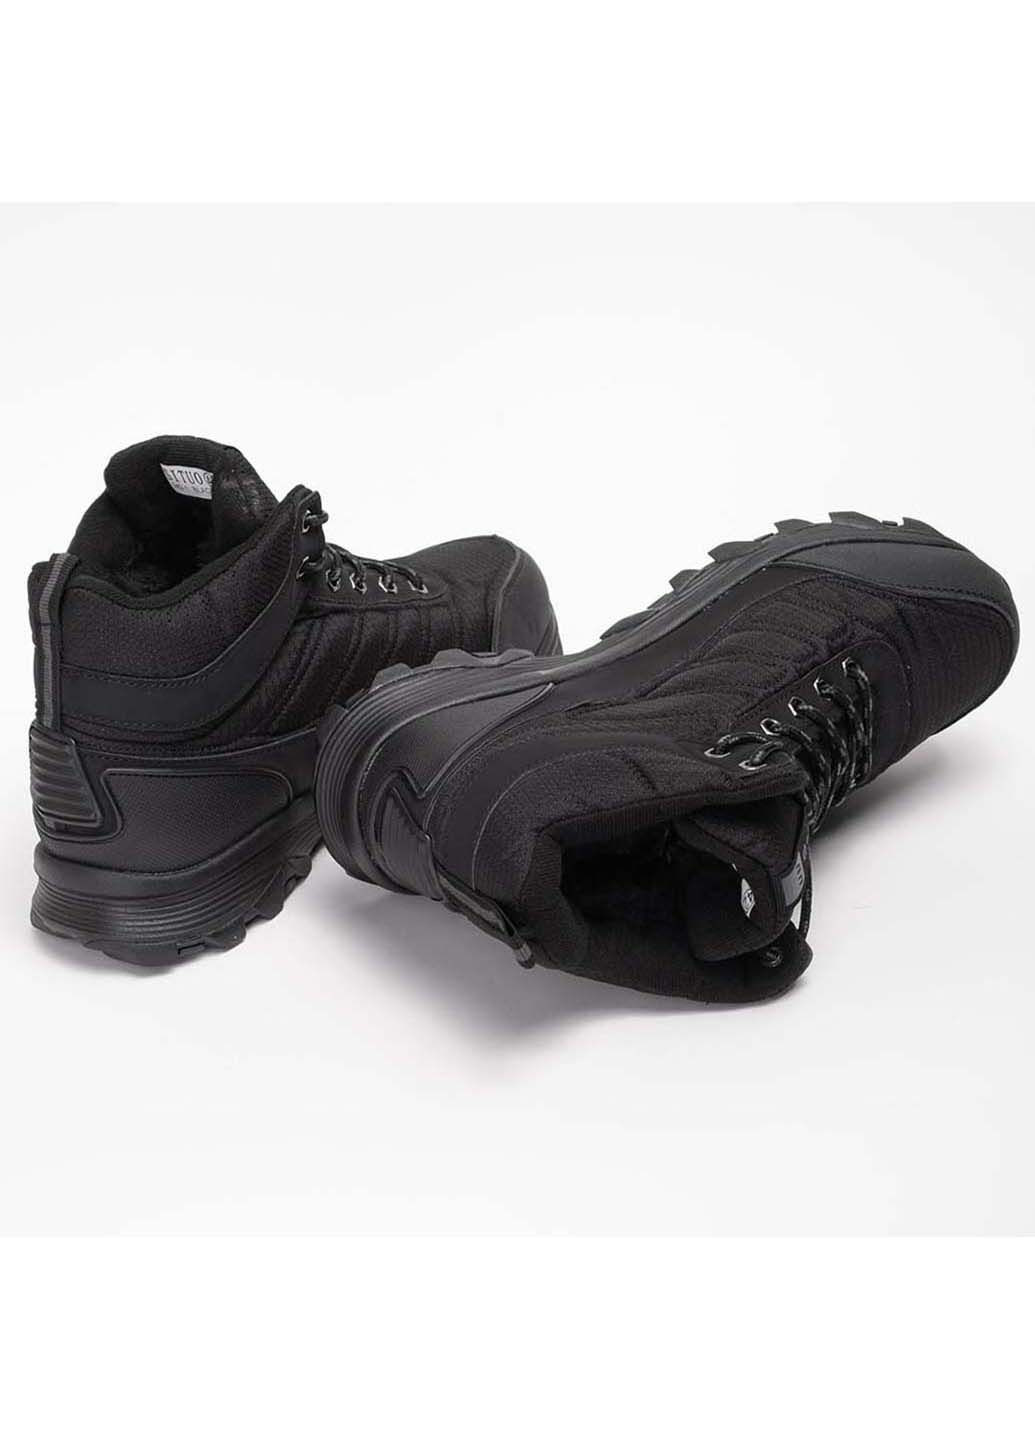 Черные осенние ботинки мужские Fashion